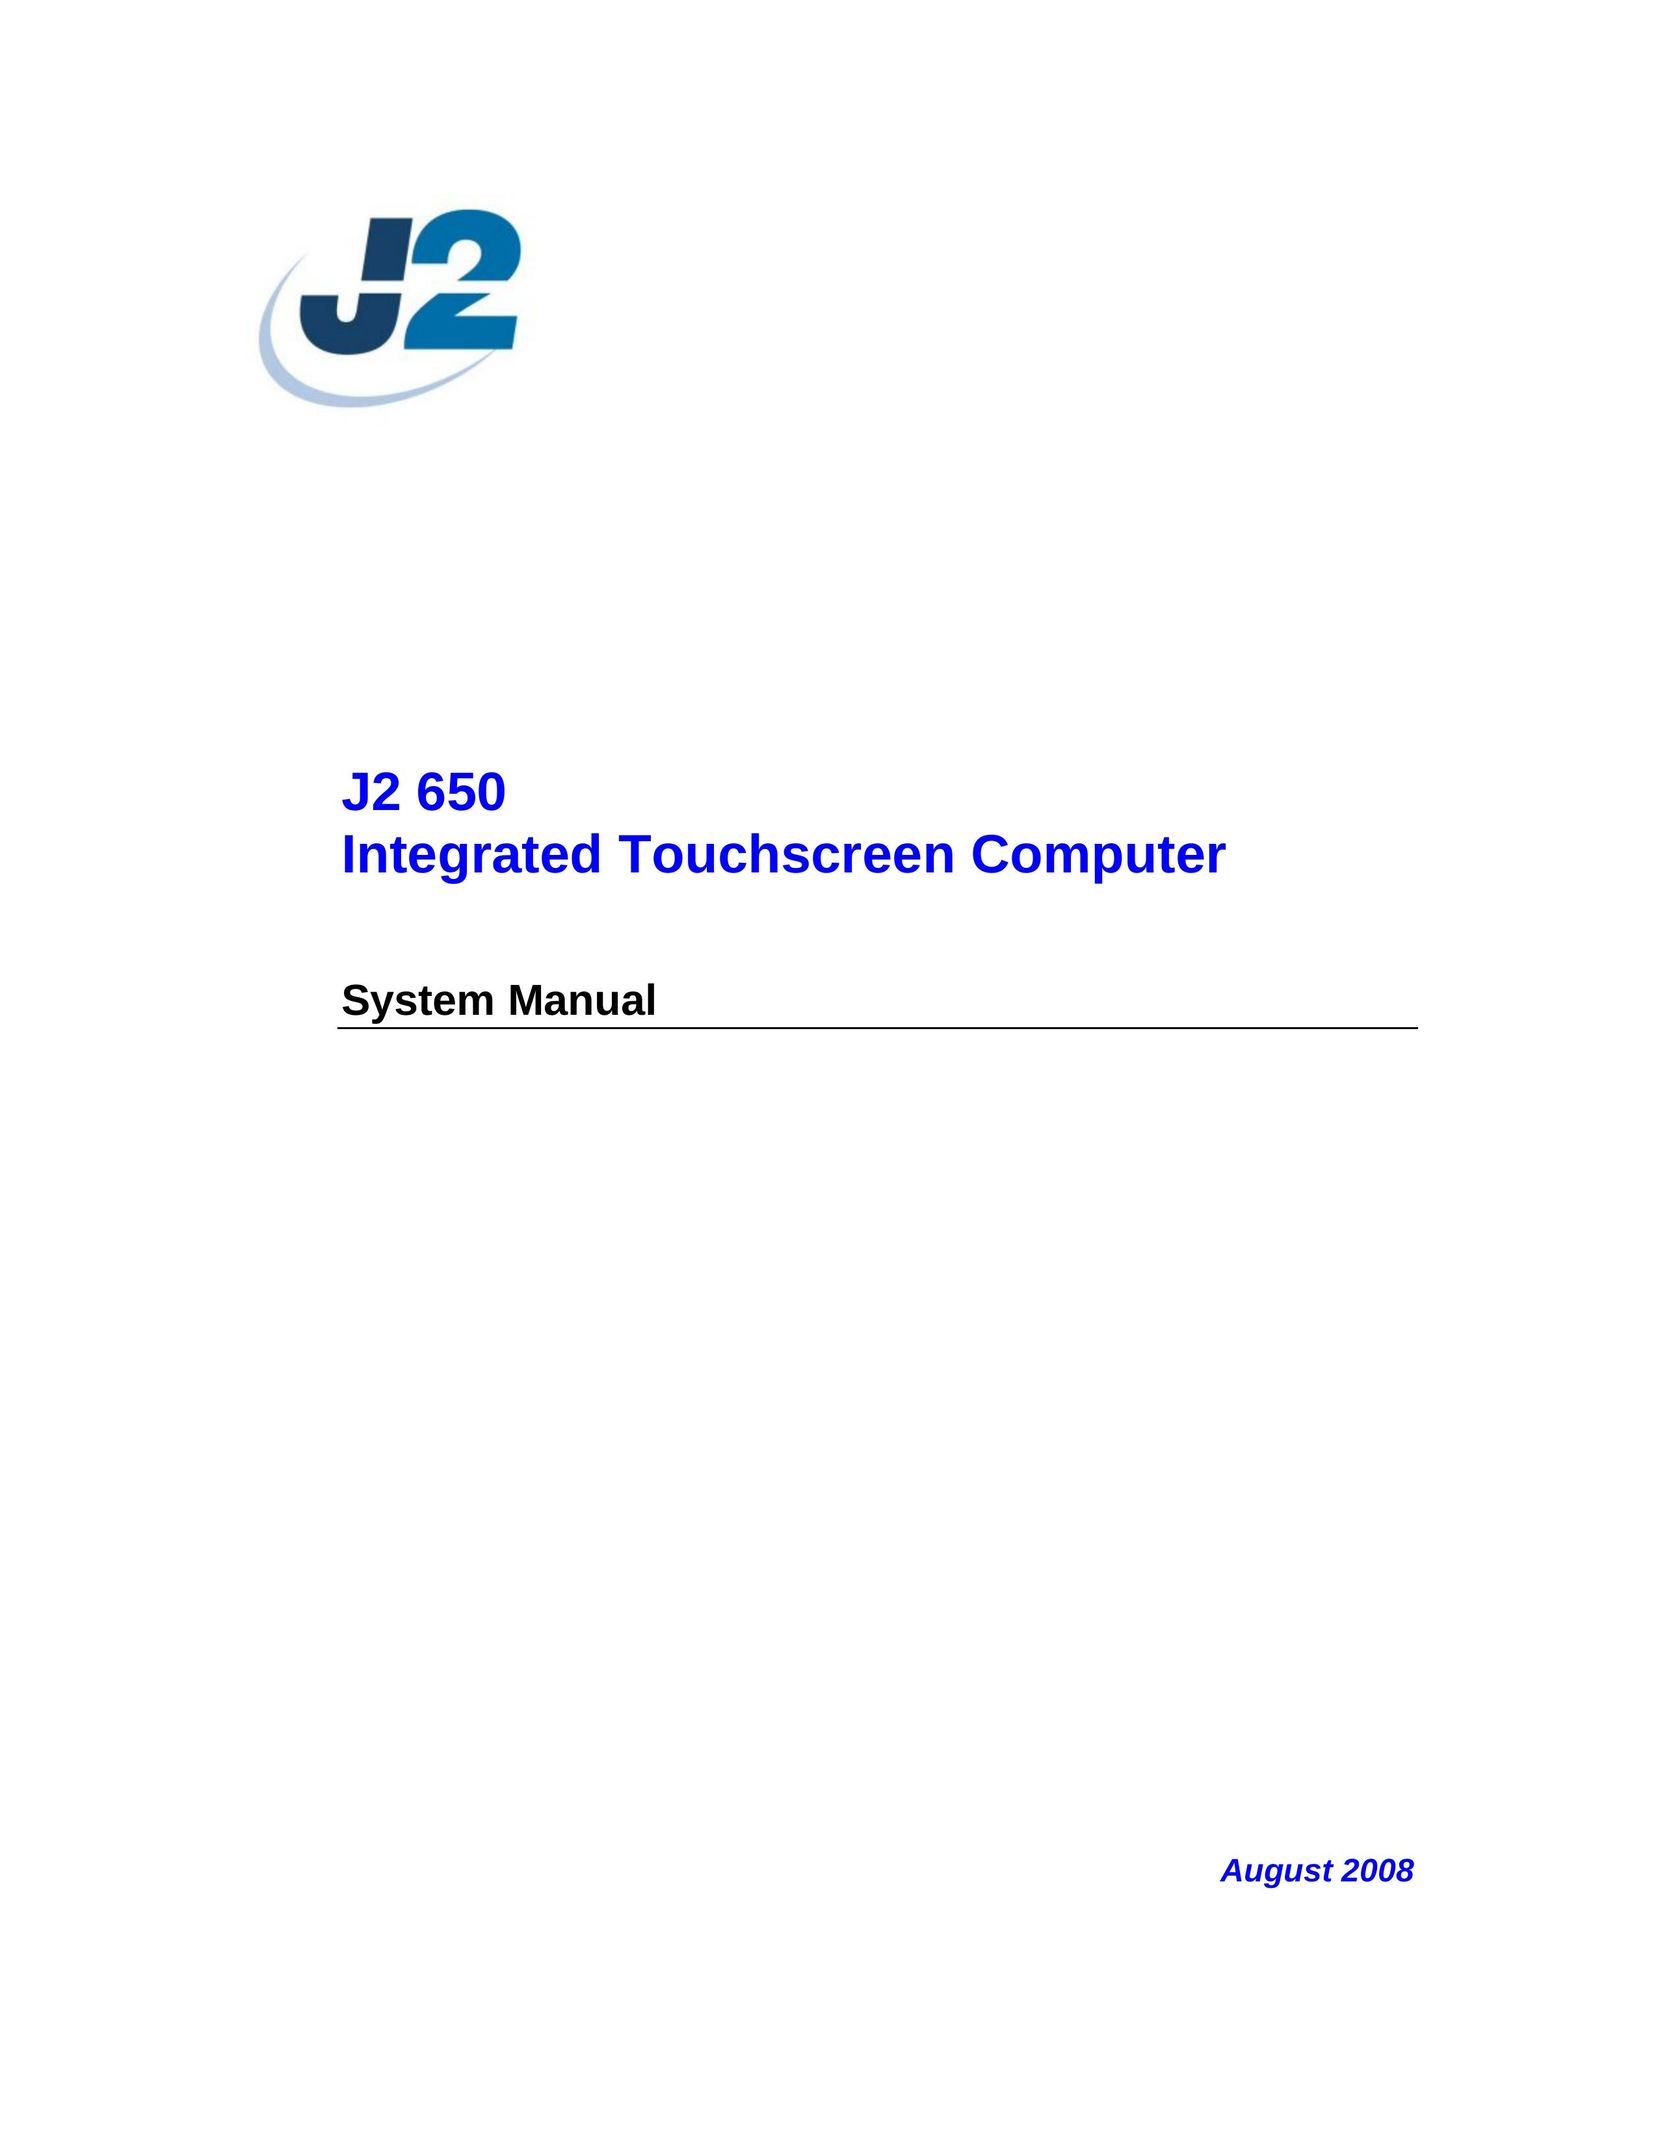 Intel J2 650 Personal Computer User Manual